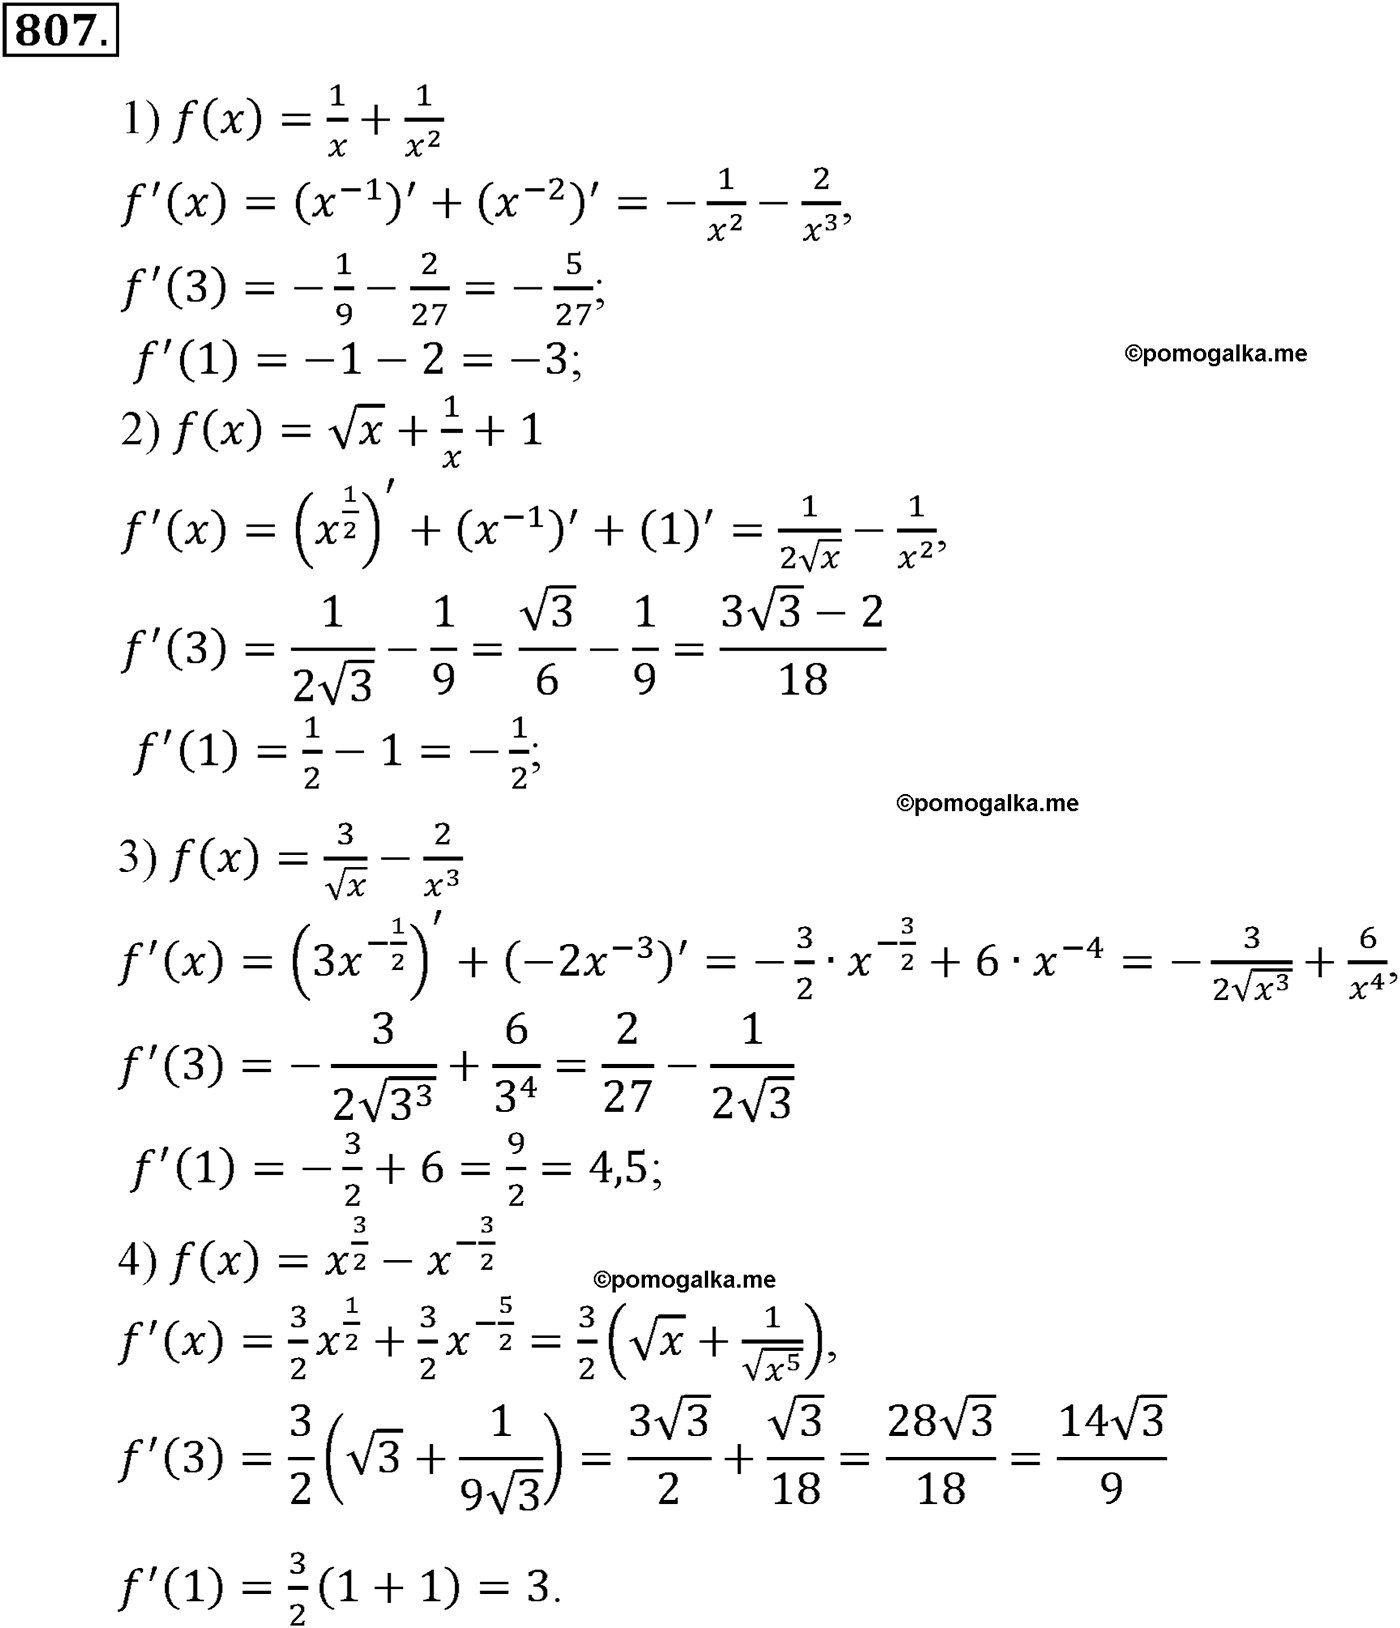 разбор задачи №807 по алгебре за 10-11 класс из учебника Алимова, Колягина